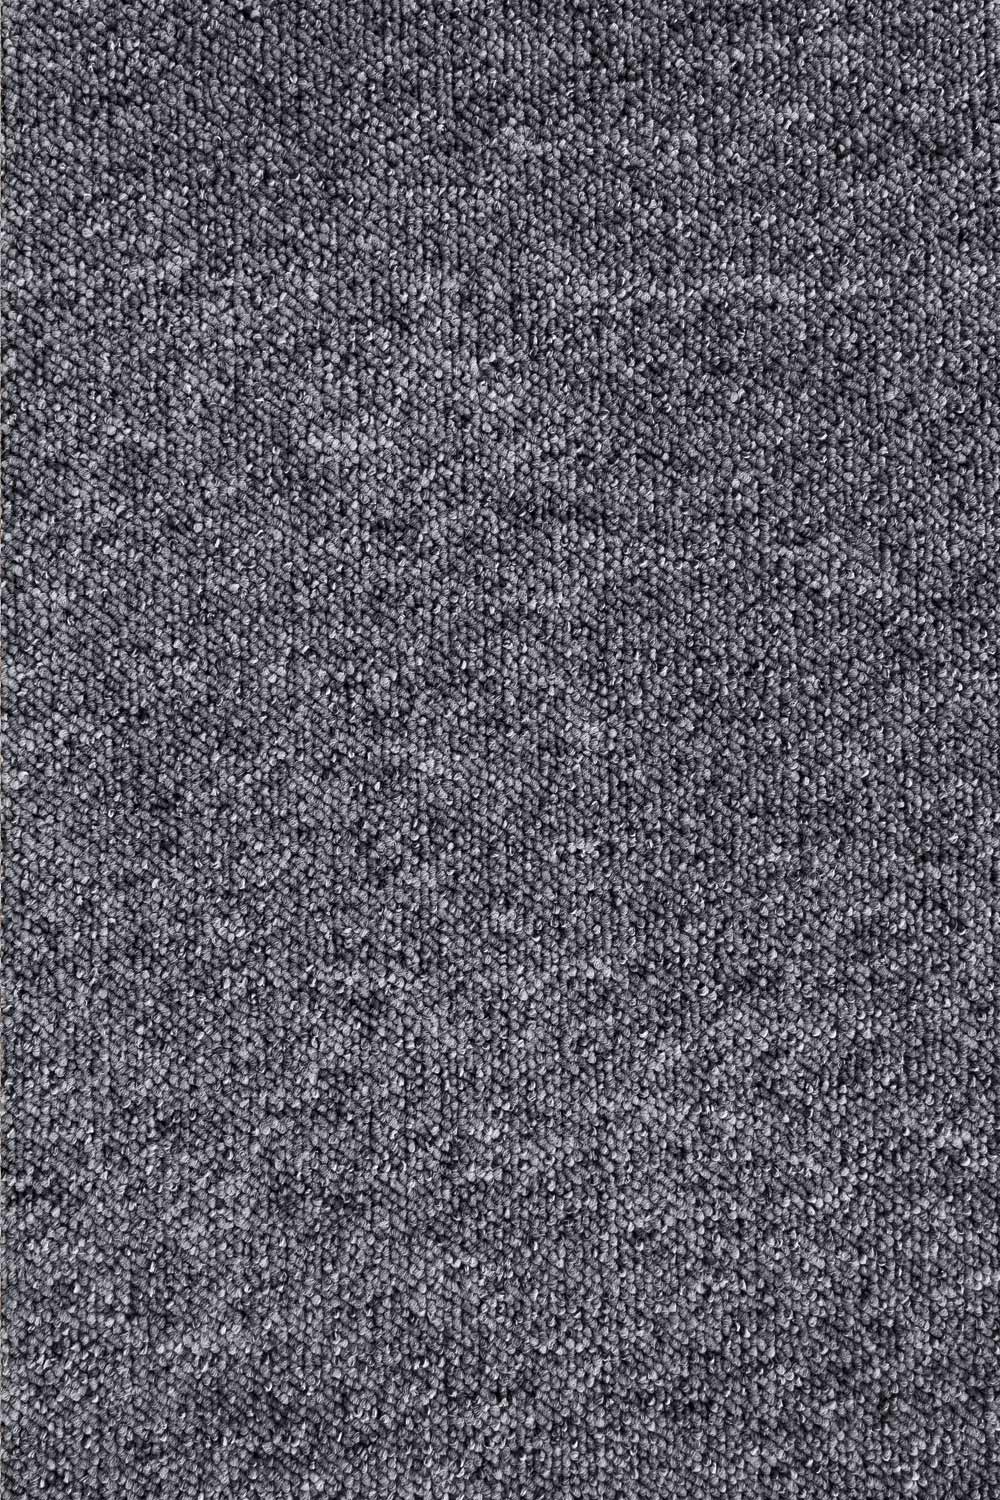 Metrážny koberec ROBSON 9628